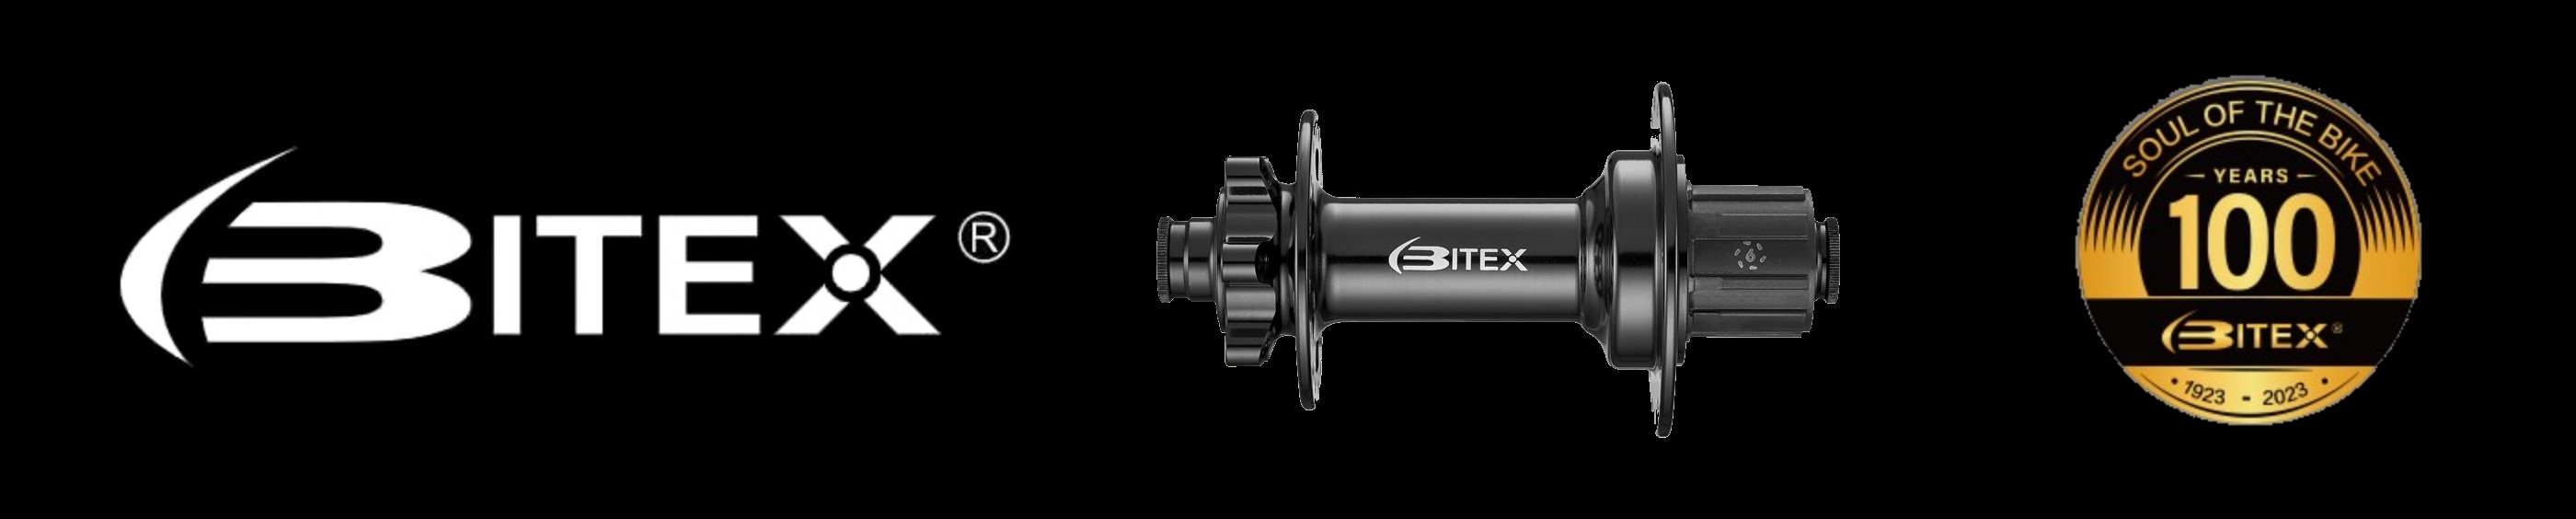 Bitex высококачественные втулки для велосипедов